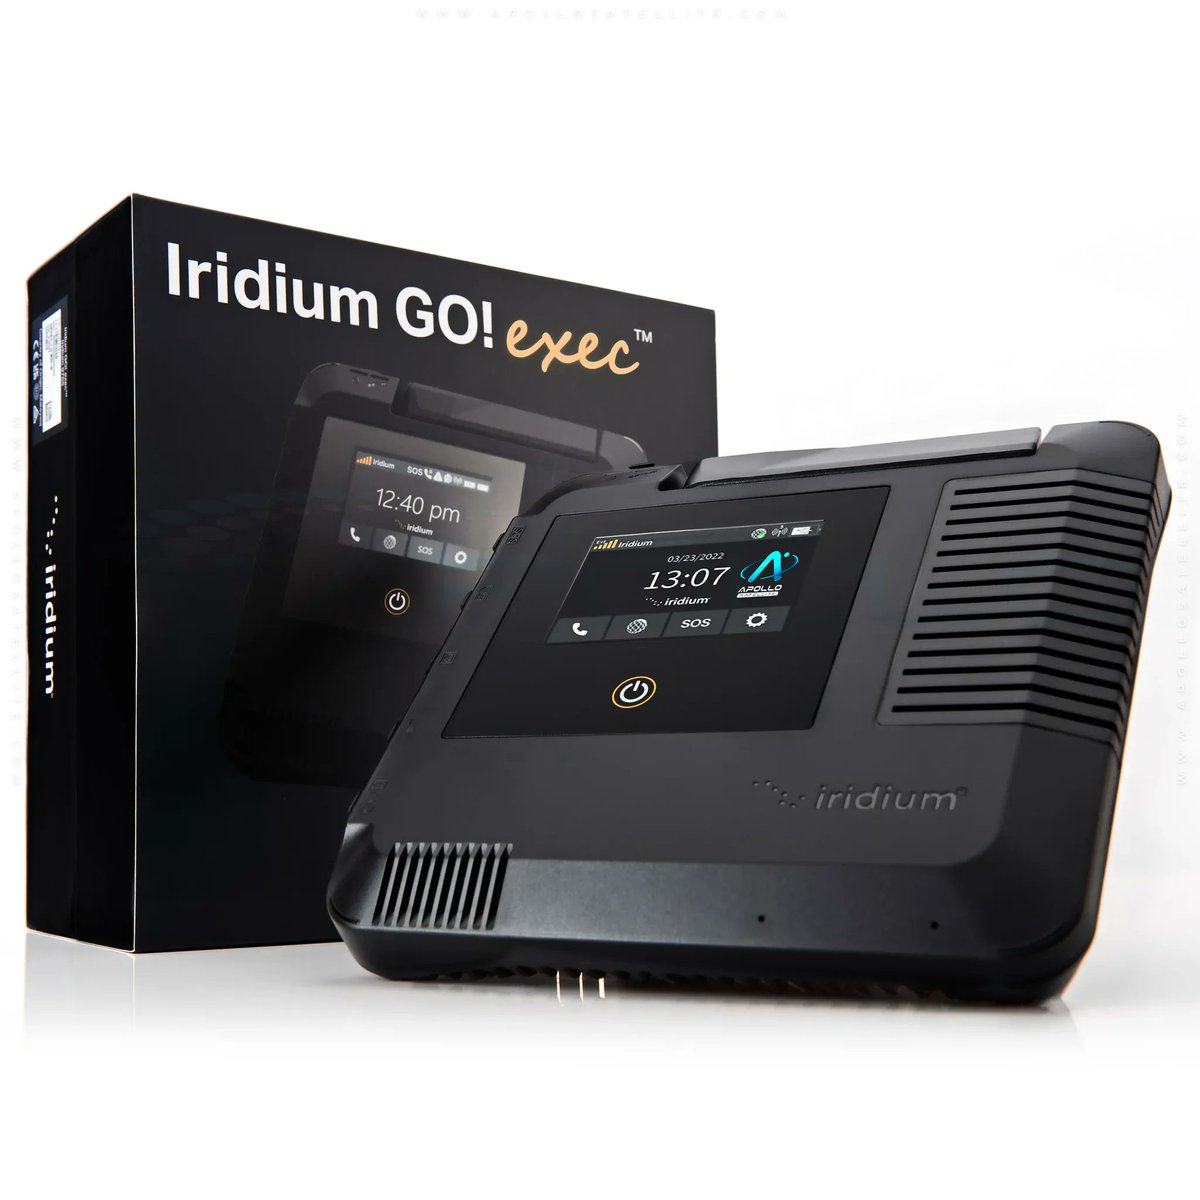 ¿Qué es el Iridium GO exec? Descubre la nueva solución de comunicación satelital de Iridium. Convierte tu dispositivo móvil en un centro de comunicación satelital, manteniéndote conectado en cualquier lugar del mundo buff.ly/44hAsU0 #IridiumGOexec #ComunicaciónSatelital'